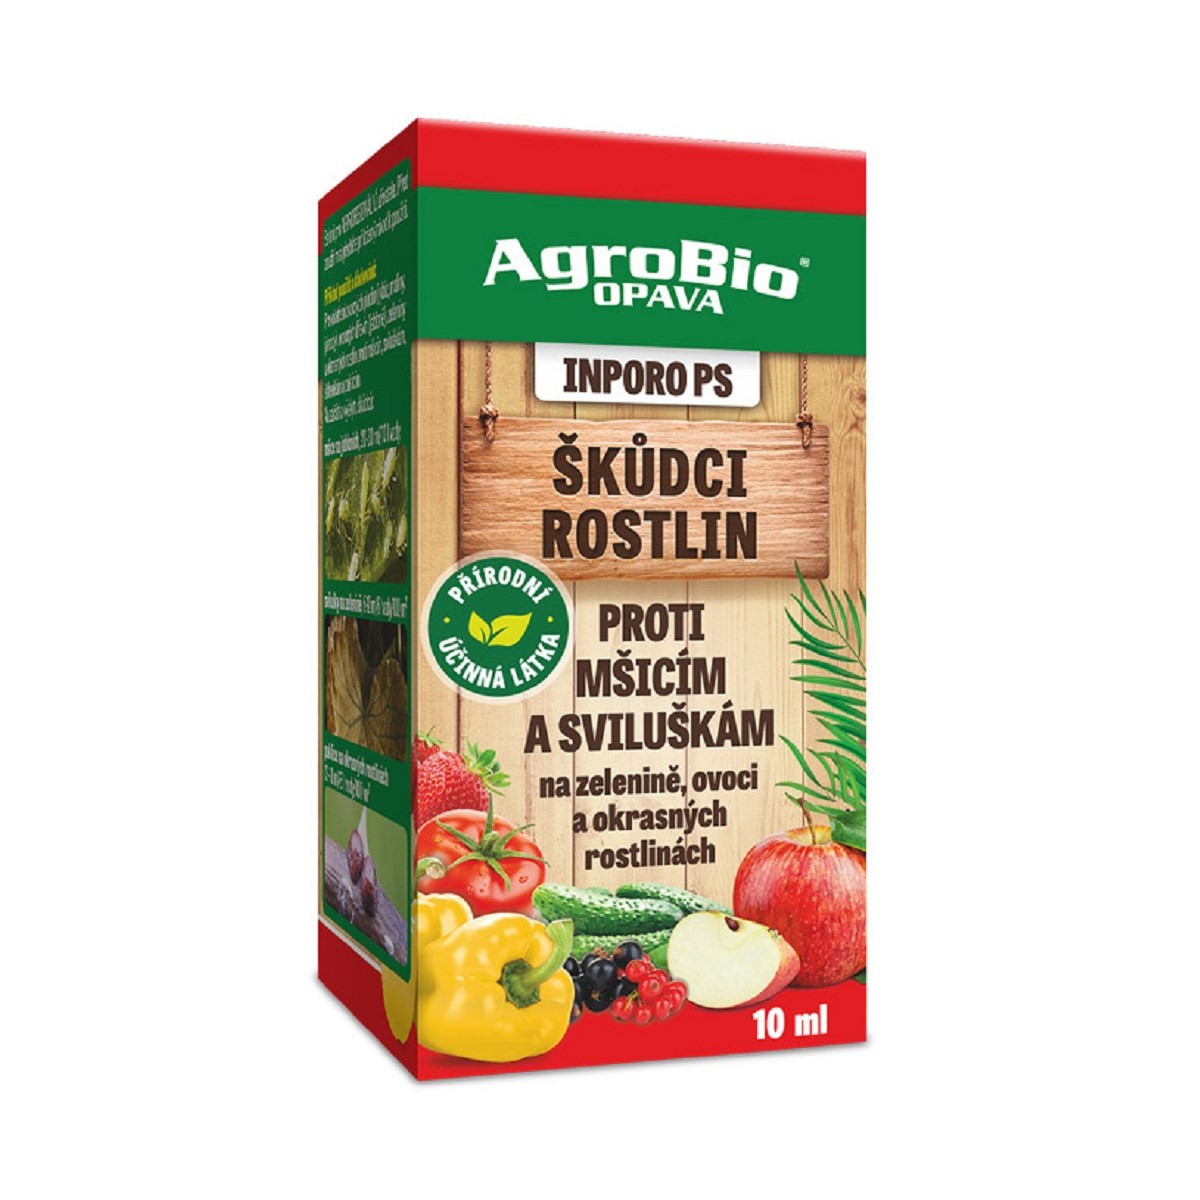 INPORO PS proti mšicím, sviluškám a puklicím - AgroBio - ochrana rostlin - 10 ml